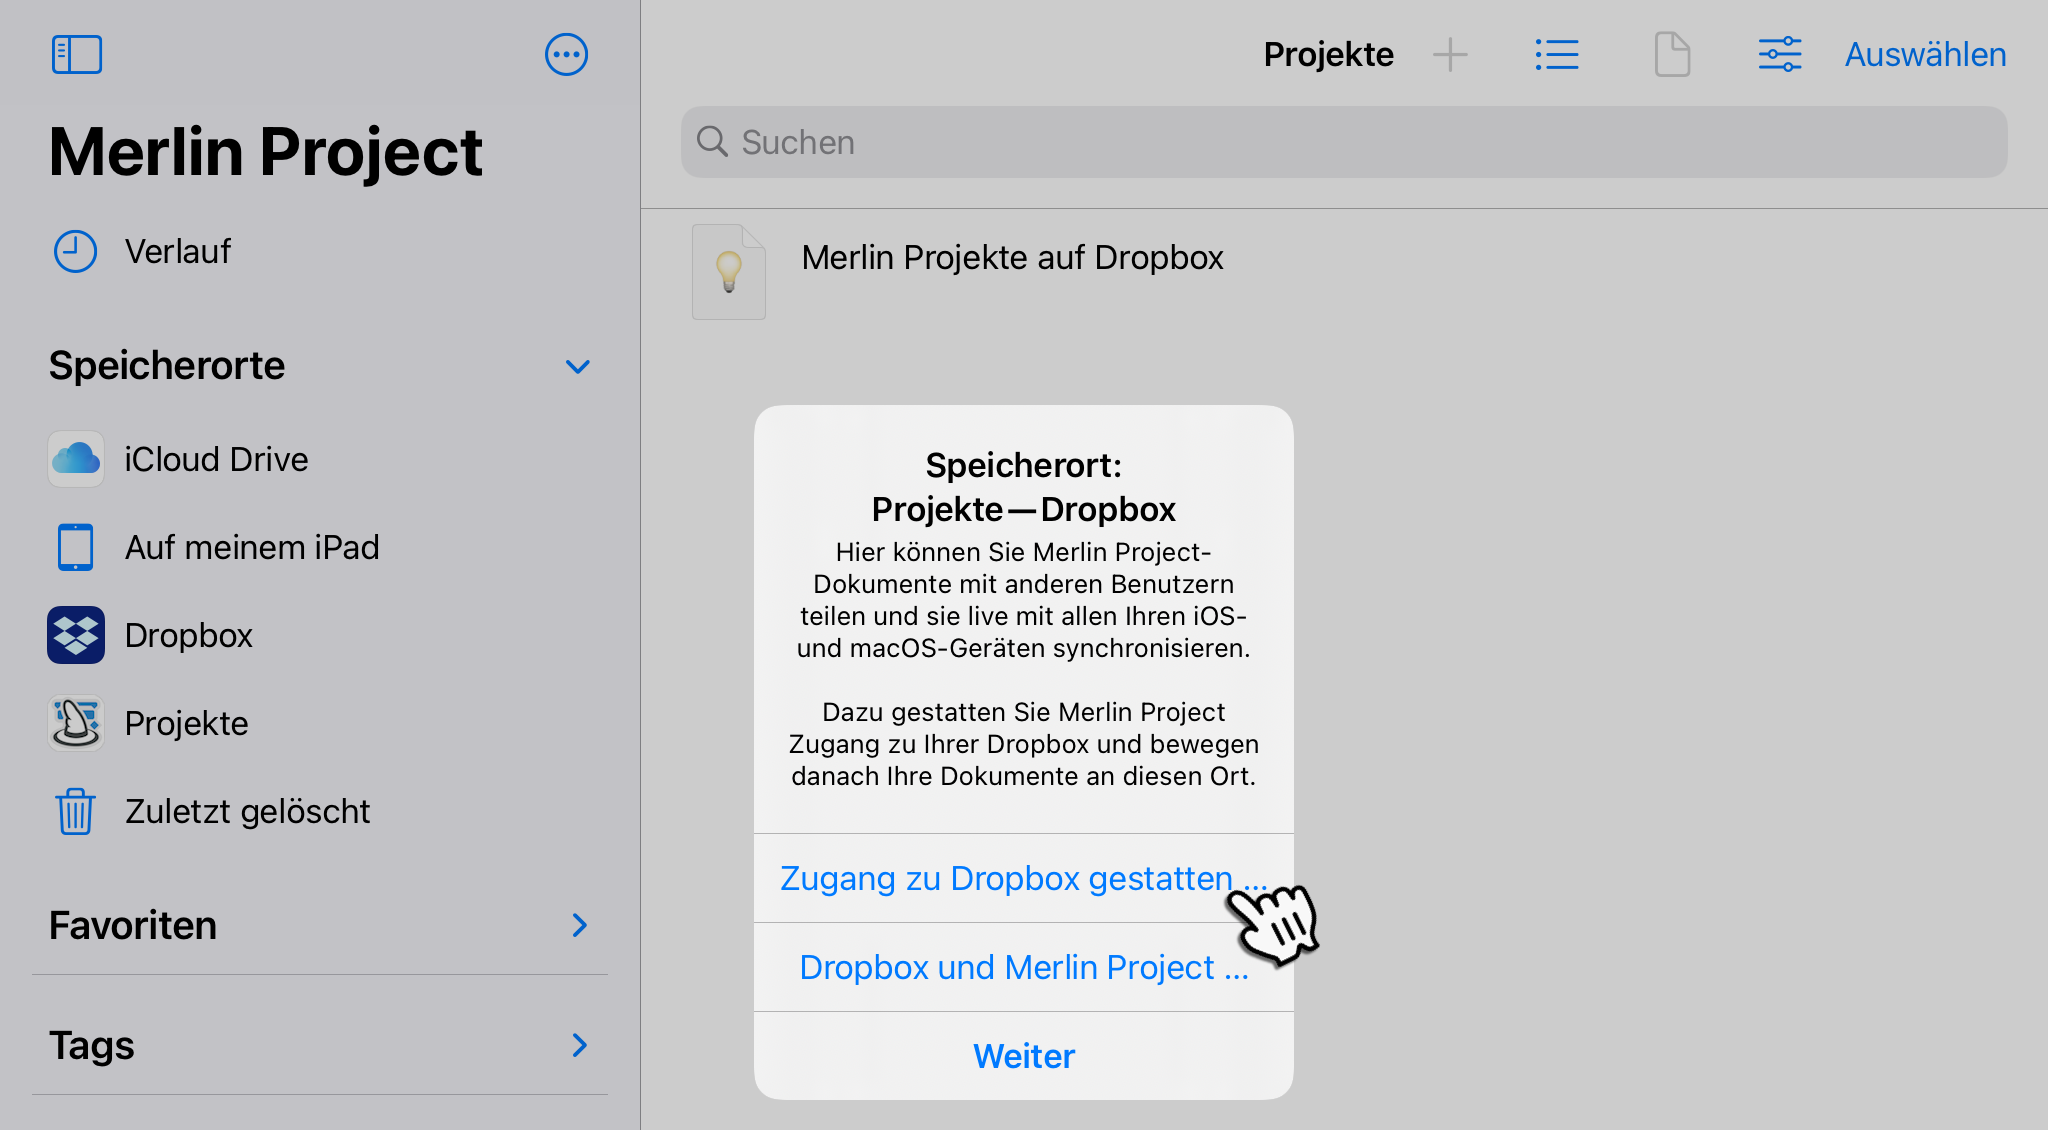 iPad:Projekt - Dropbox Allow Access